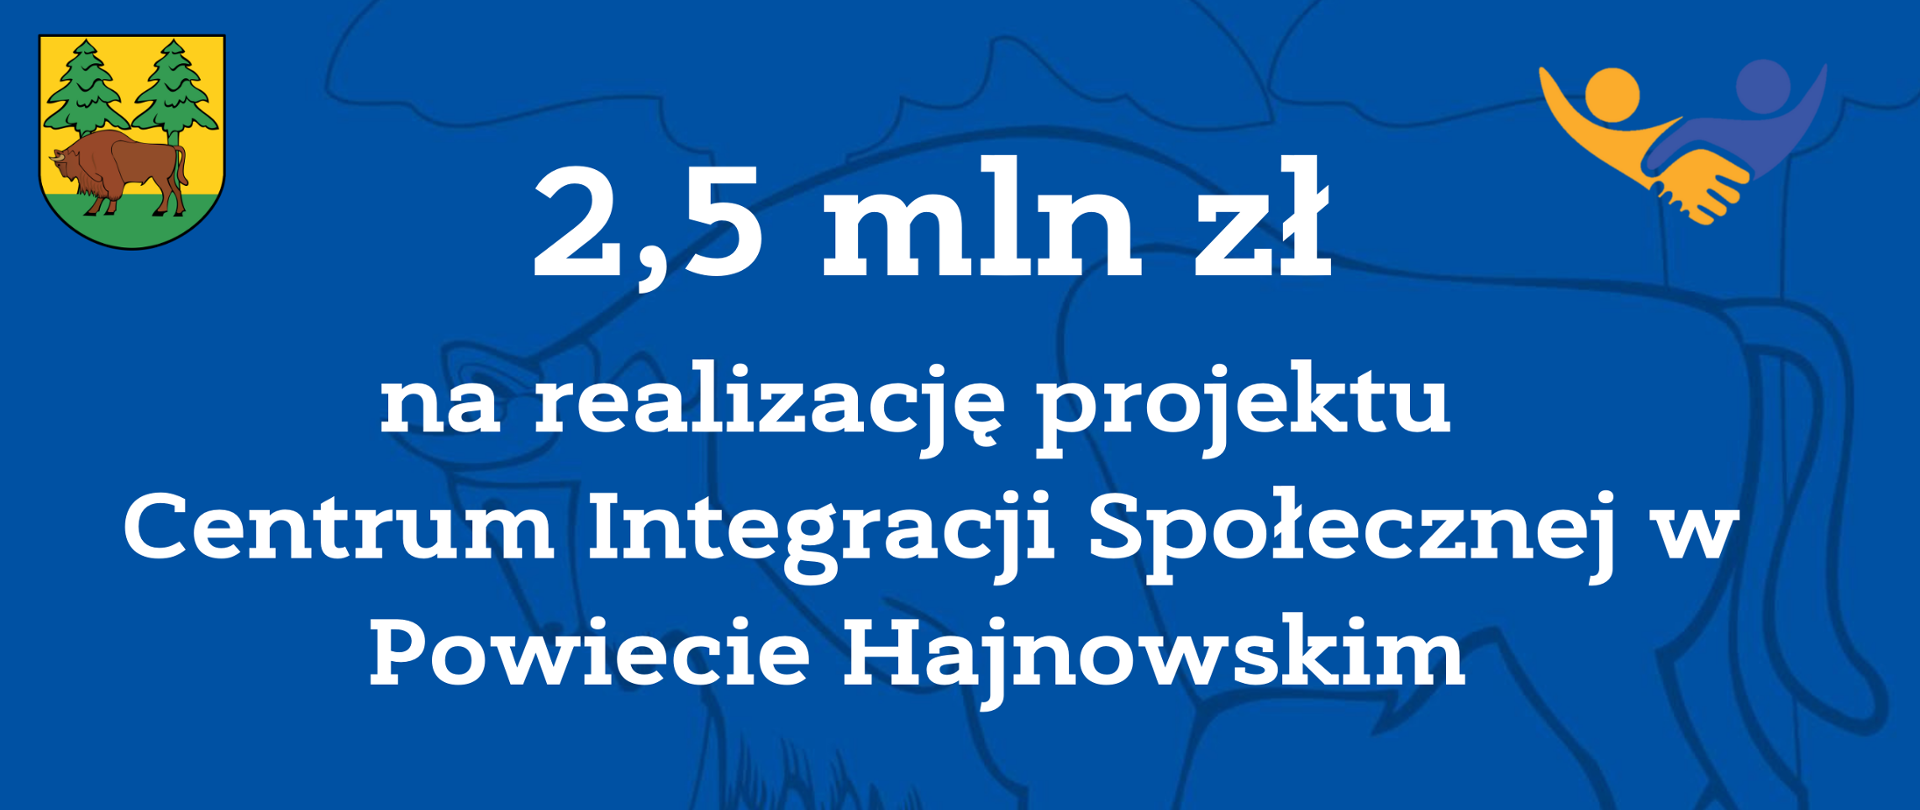 2,5 mln na realizację projektu Centrum Integracji Społecznej w Powiecie Hajnowskim